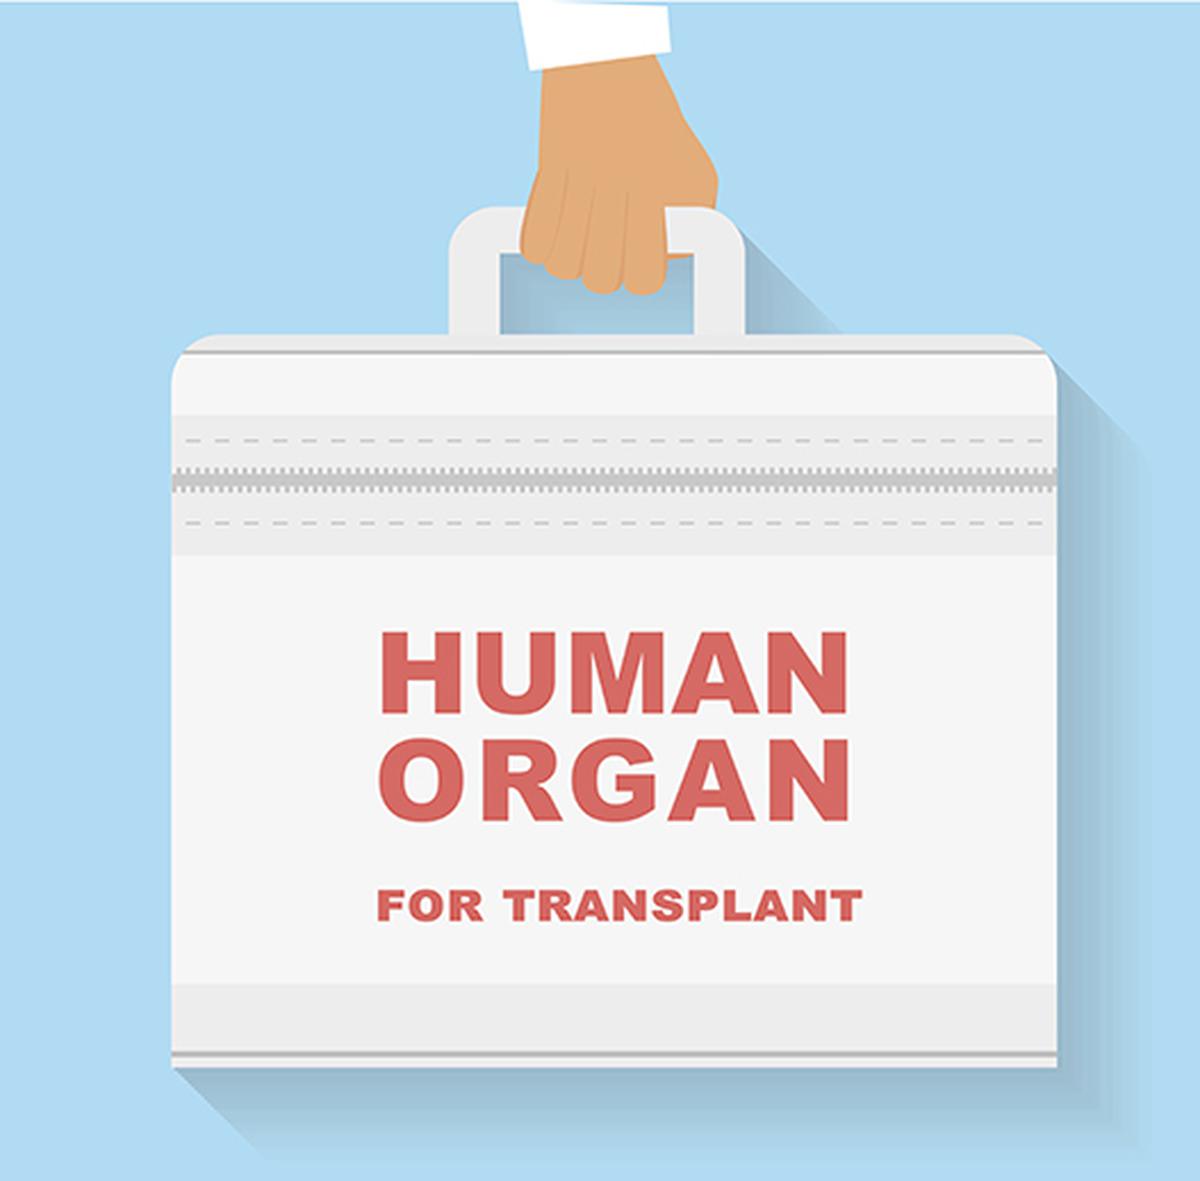 Les donneurs et receveurs d’organes ABO incompatibles partagent leurs expériences